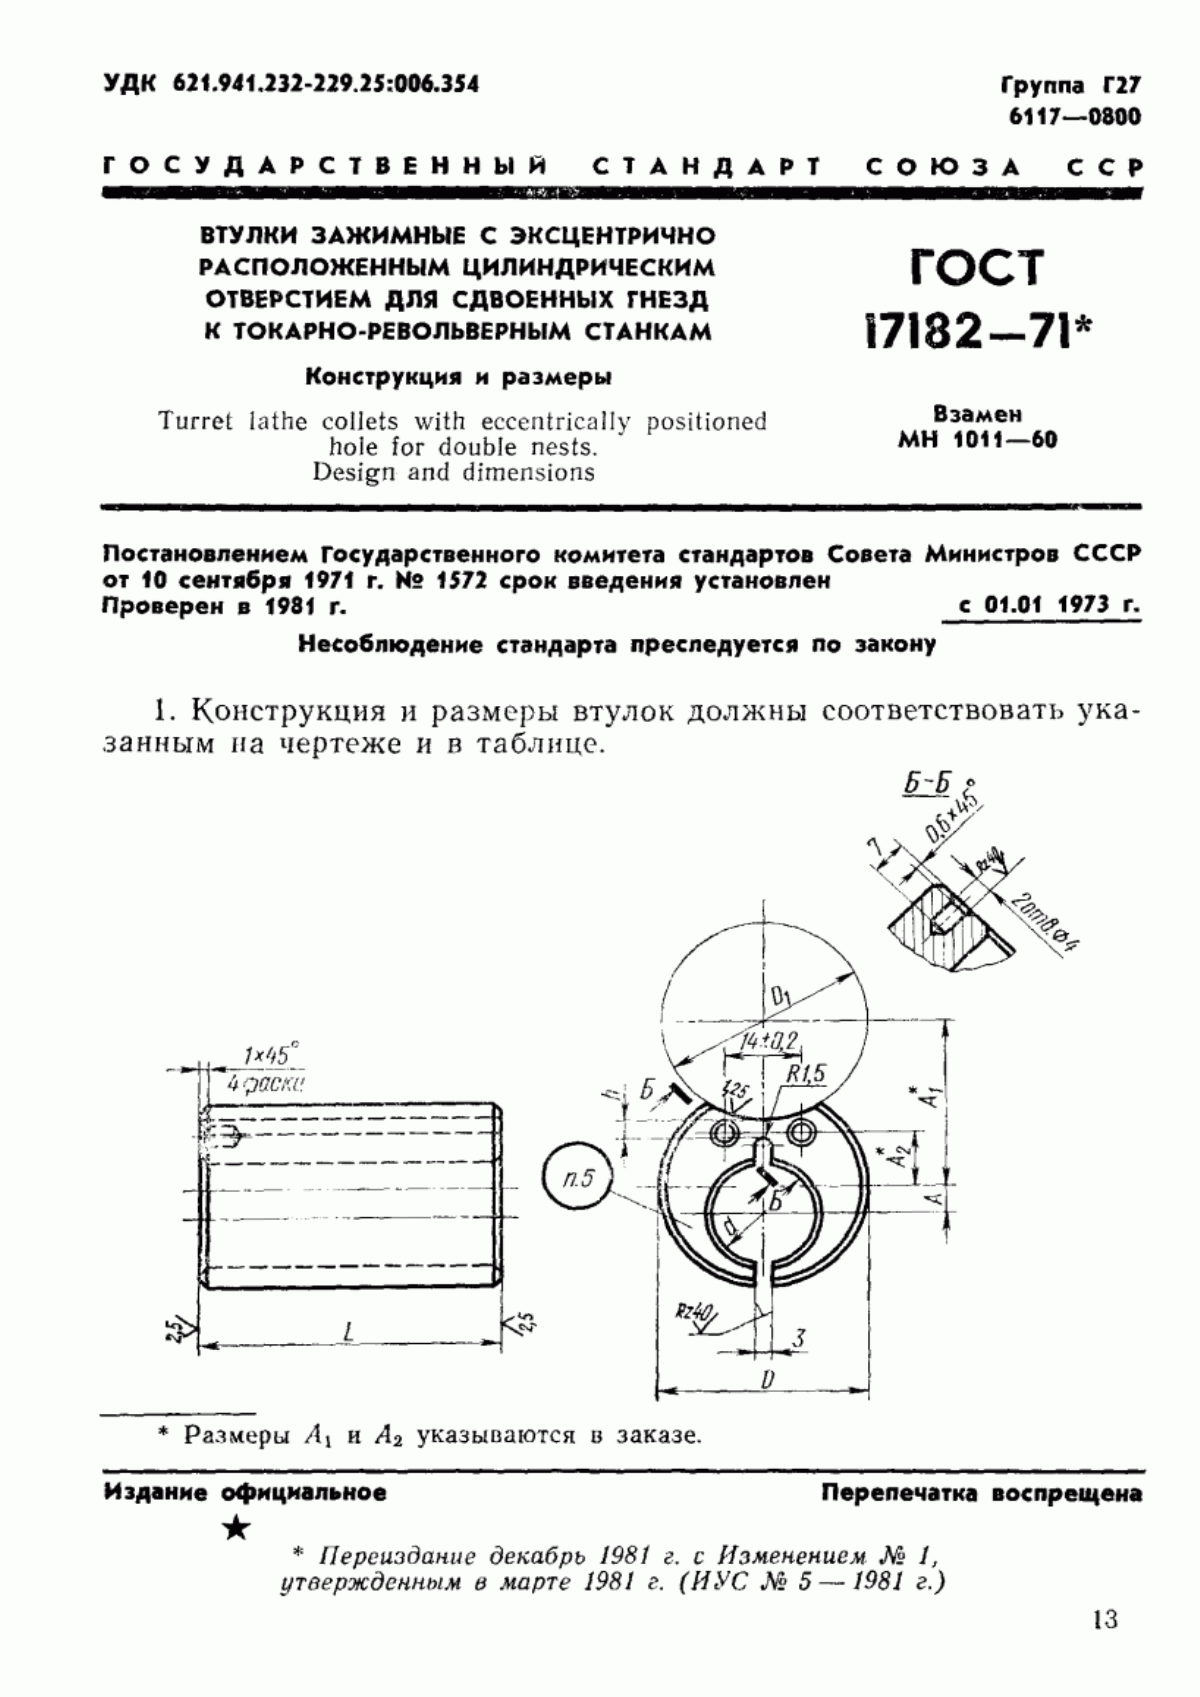 ГОСТ 17182-71 Втулки зажимные с эксцентрично расположенным цилиндрическим отверстием для сдвоенных гнезд к токарно-револьверным станкам. Конструкция и размеры